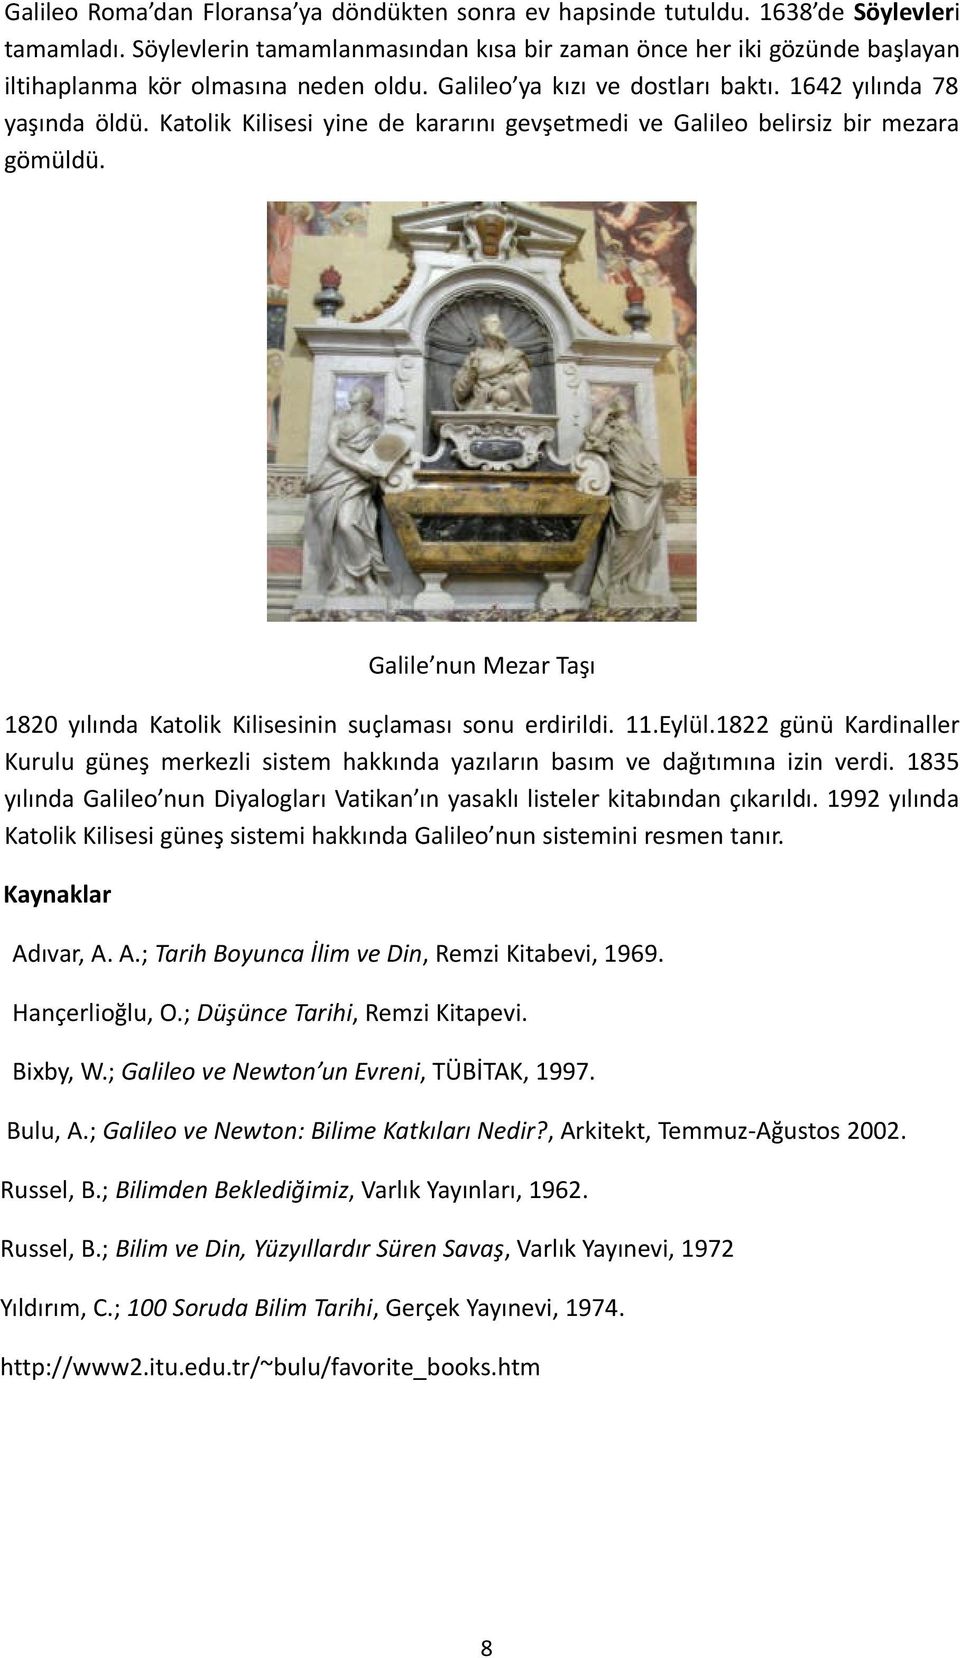 Katolik Kilisesi yine de kararını gevşetmedi ve Galileo belirsiz bir mezara gömüldü. Galile nun Mezar Taşı 1820 yılında Katolik Kilisesinin suçlaması sonu erdirildi. 11.Eylül.